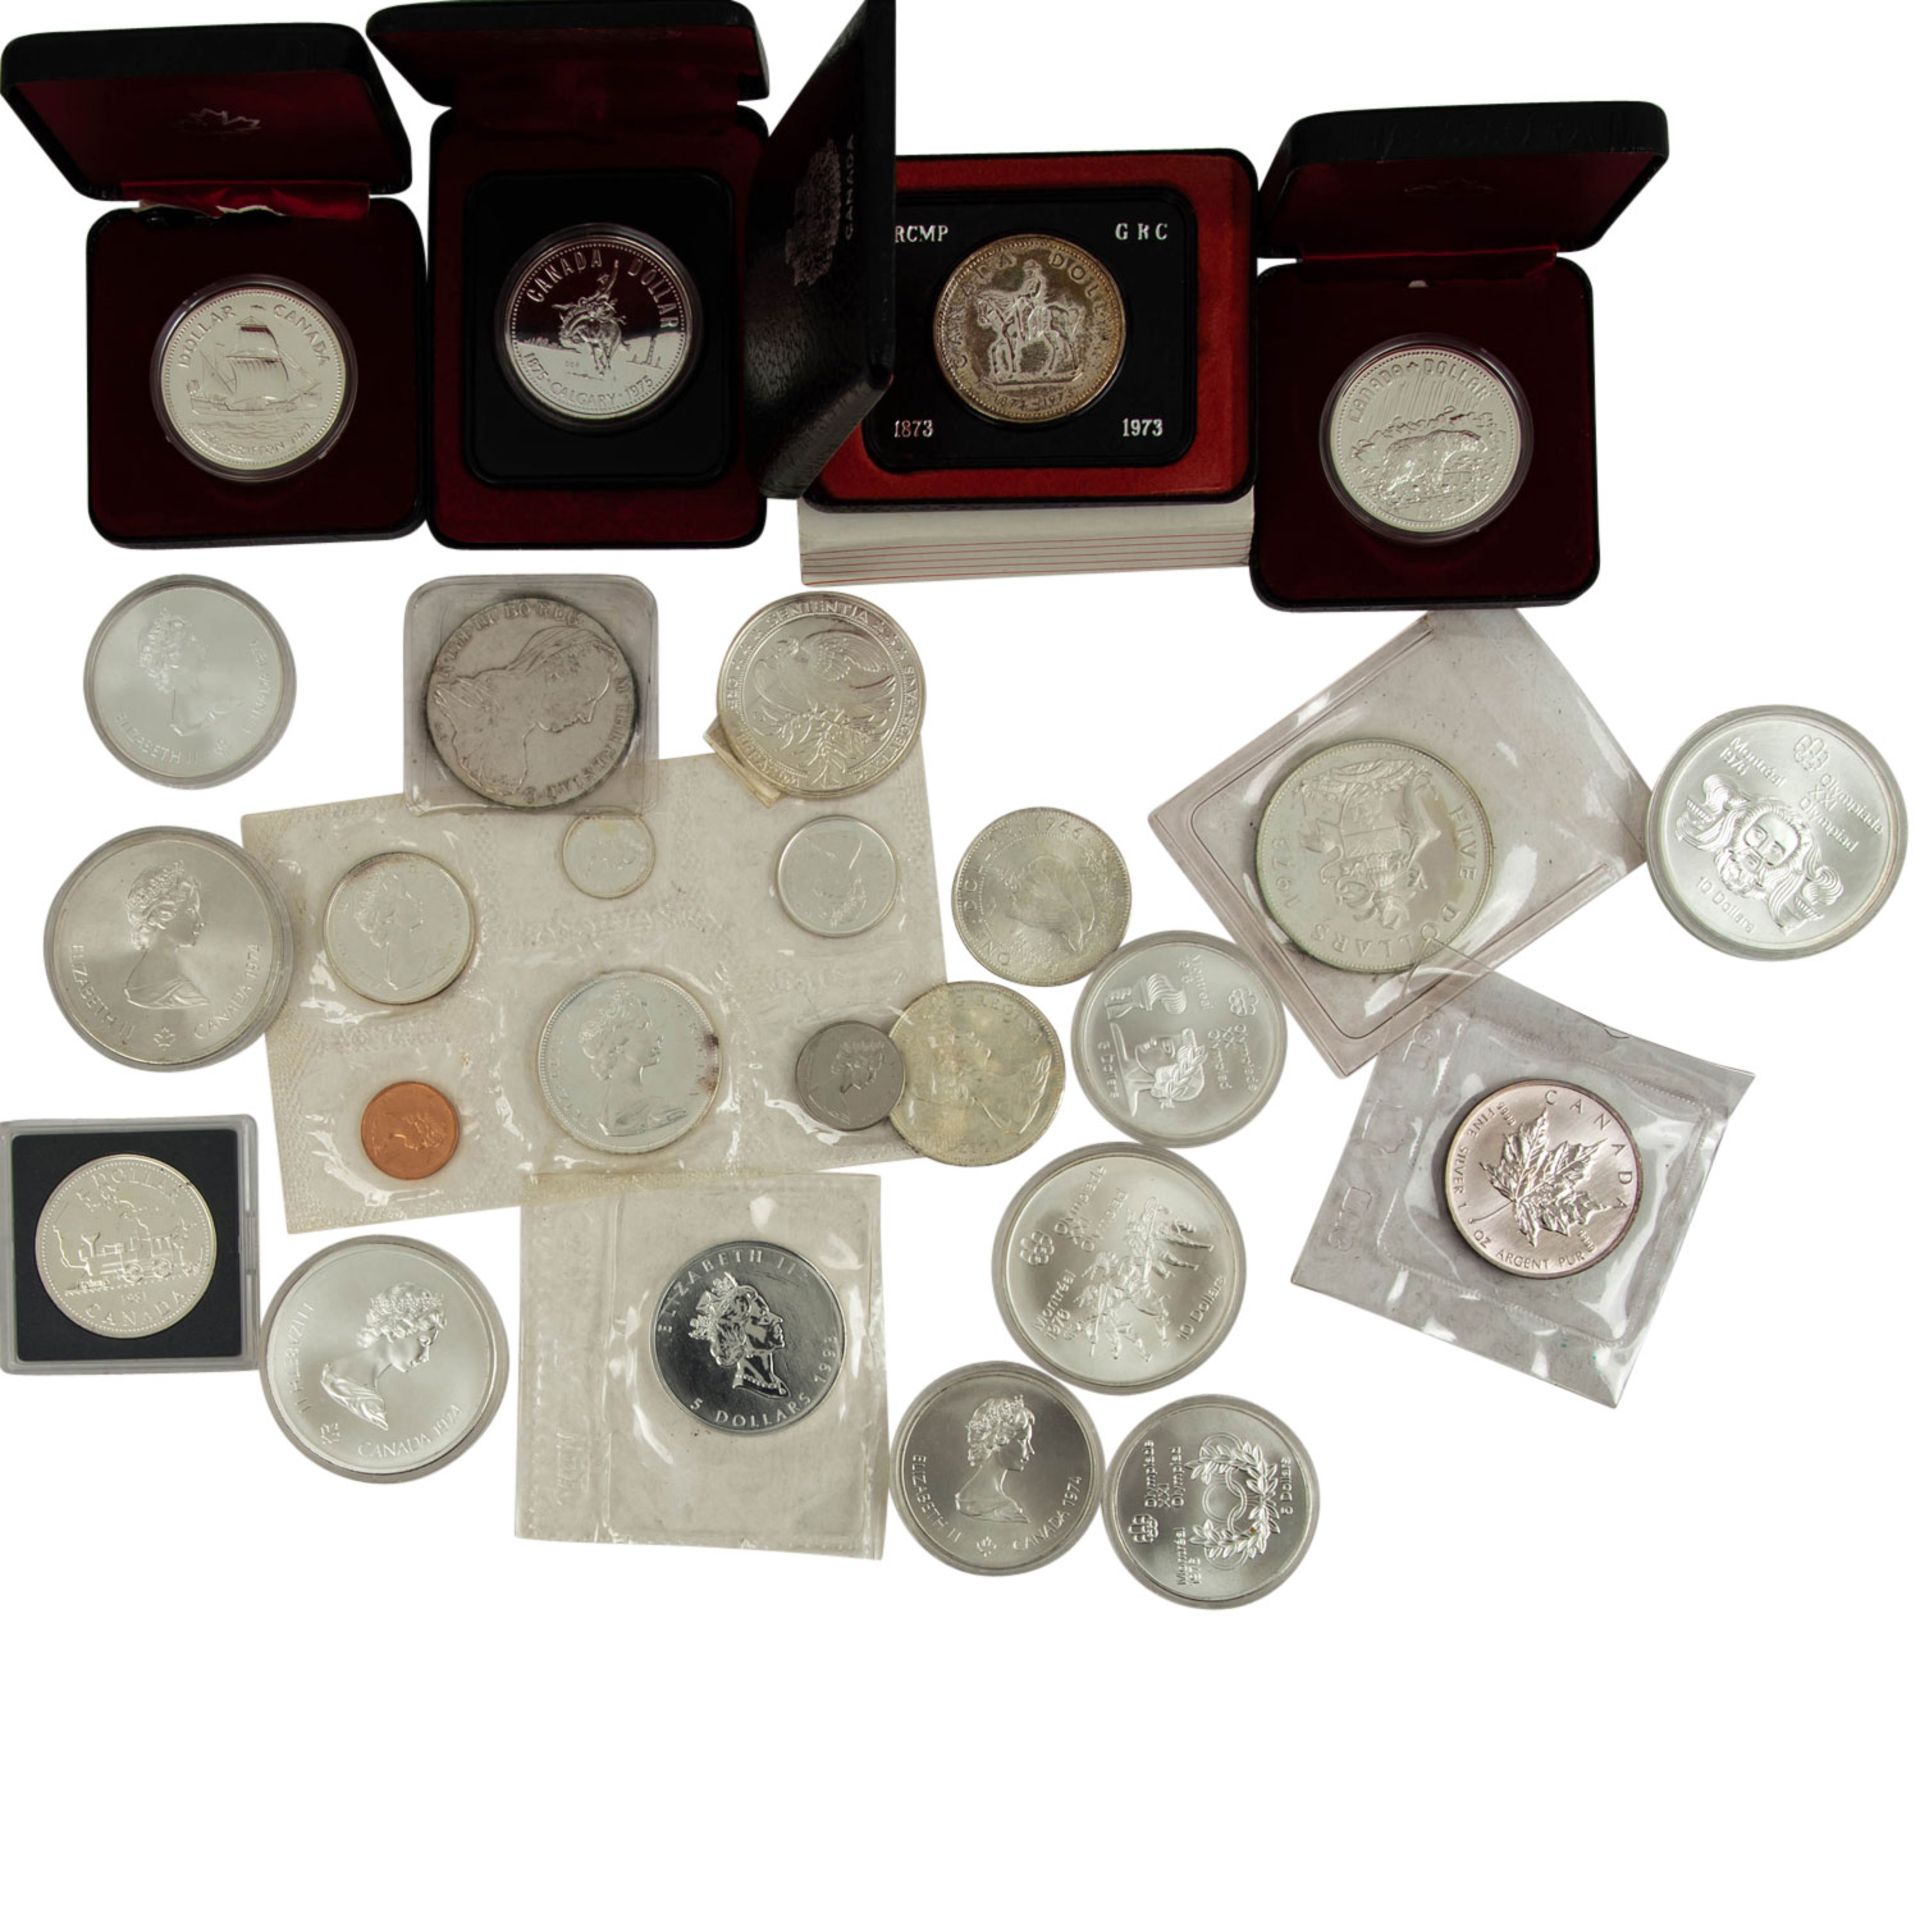 Gemischter Tütenposten mit Münzen u.a. aus Kanada, Österreich, etc. - Bild 2 aus 5